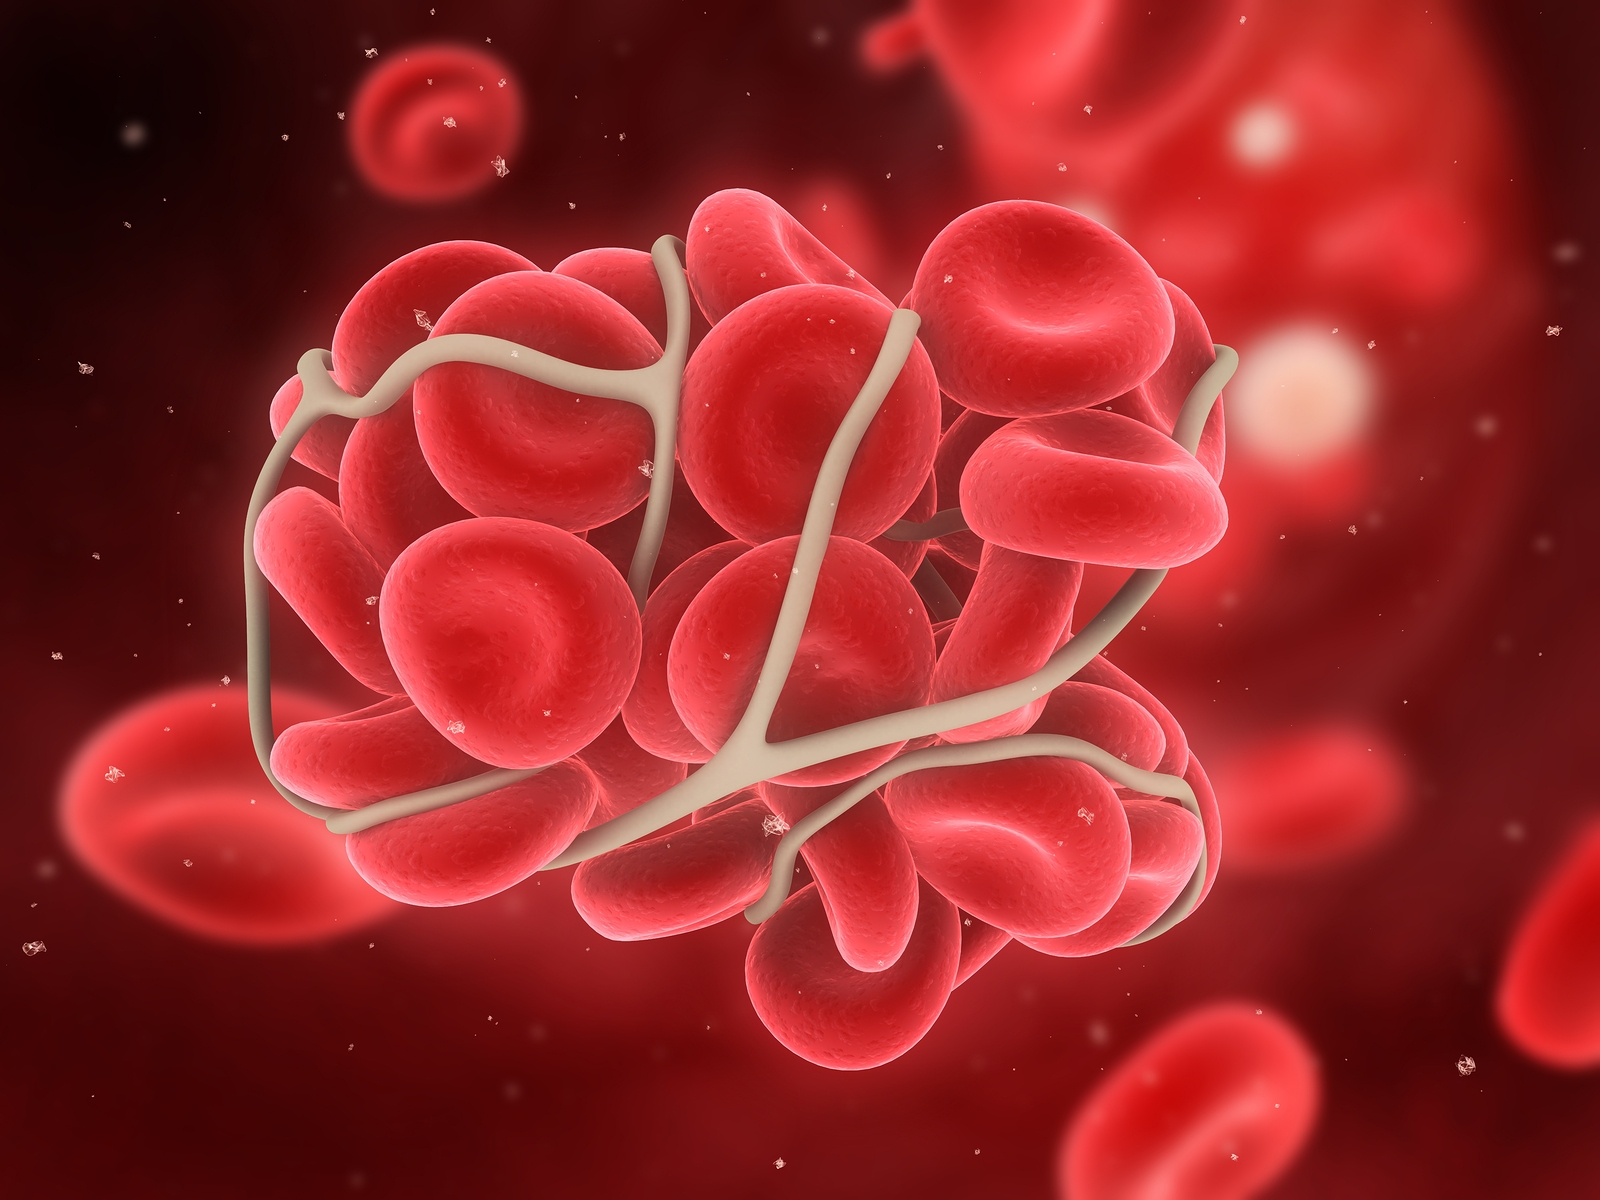 Μαγνητικά νανοσωματίδια σταματούν την εσωτερική αιμορραγία